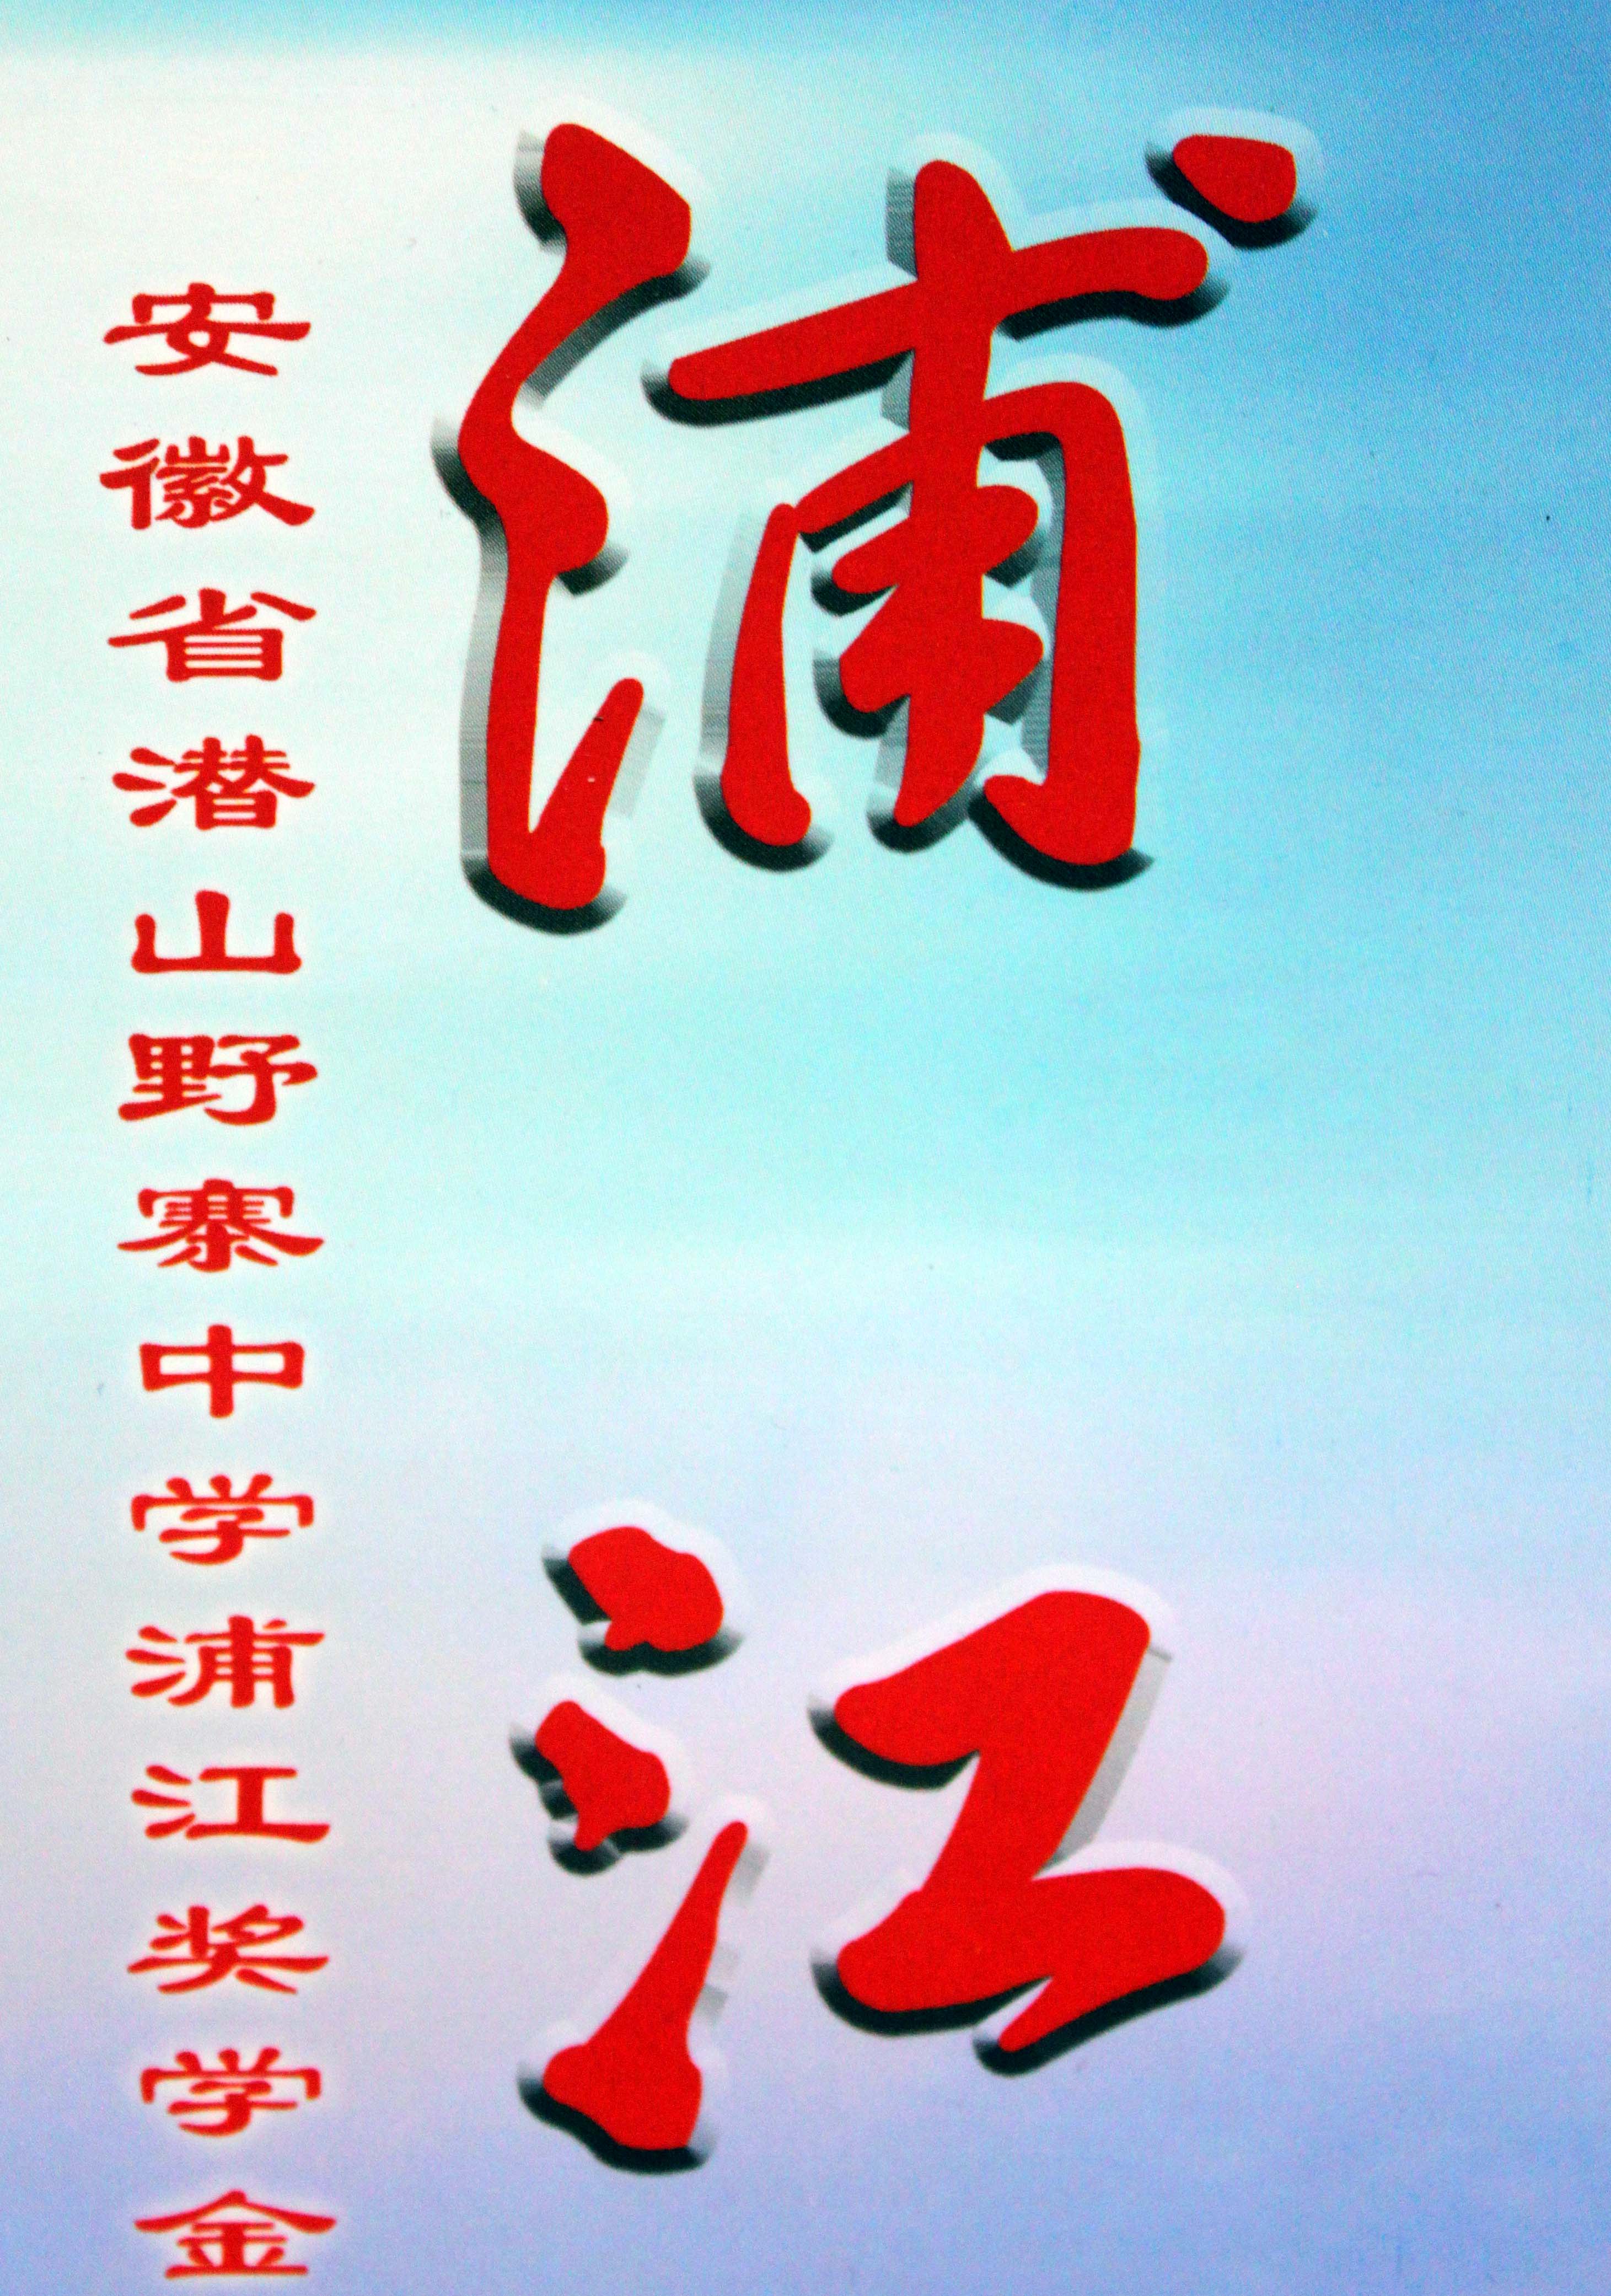 2014年高三年级“浦江”奖学金获奖名单